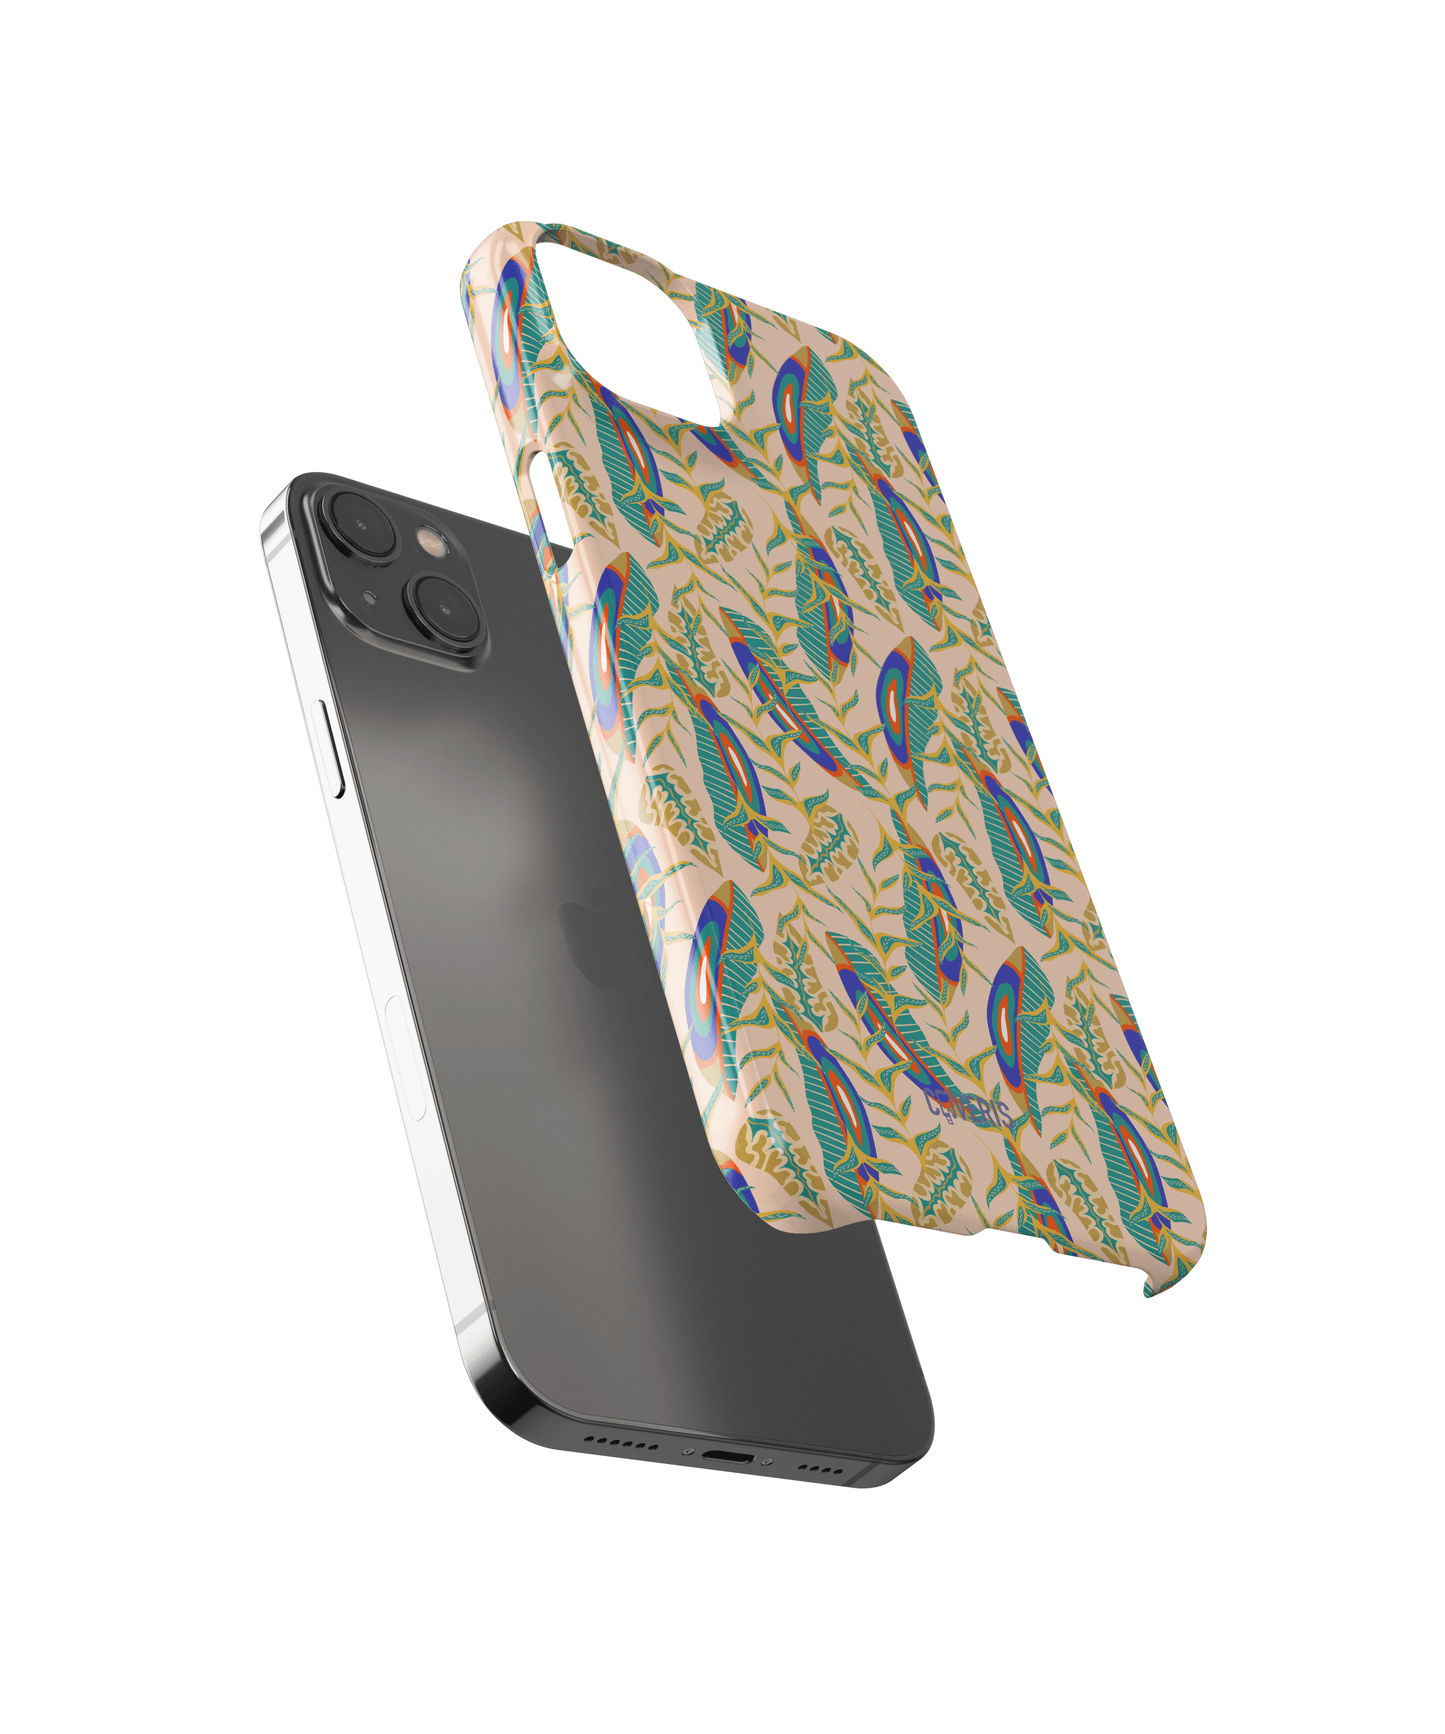 Breezy - Google Pixel 3 XL phone case